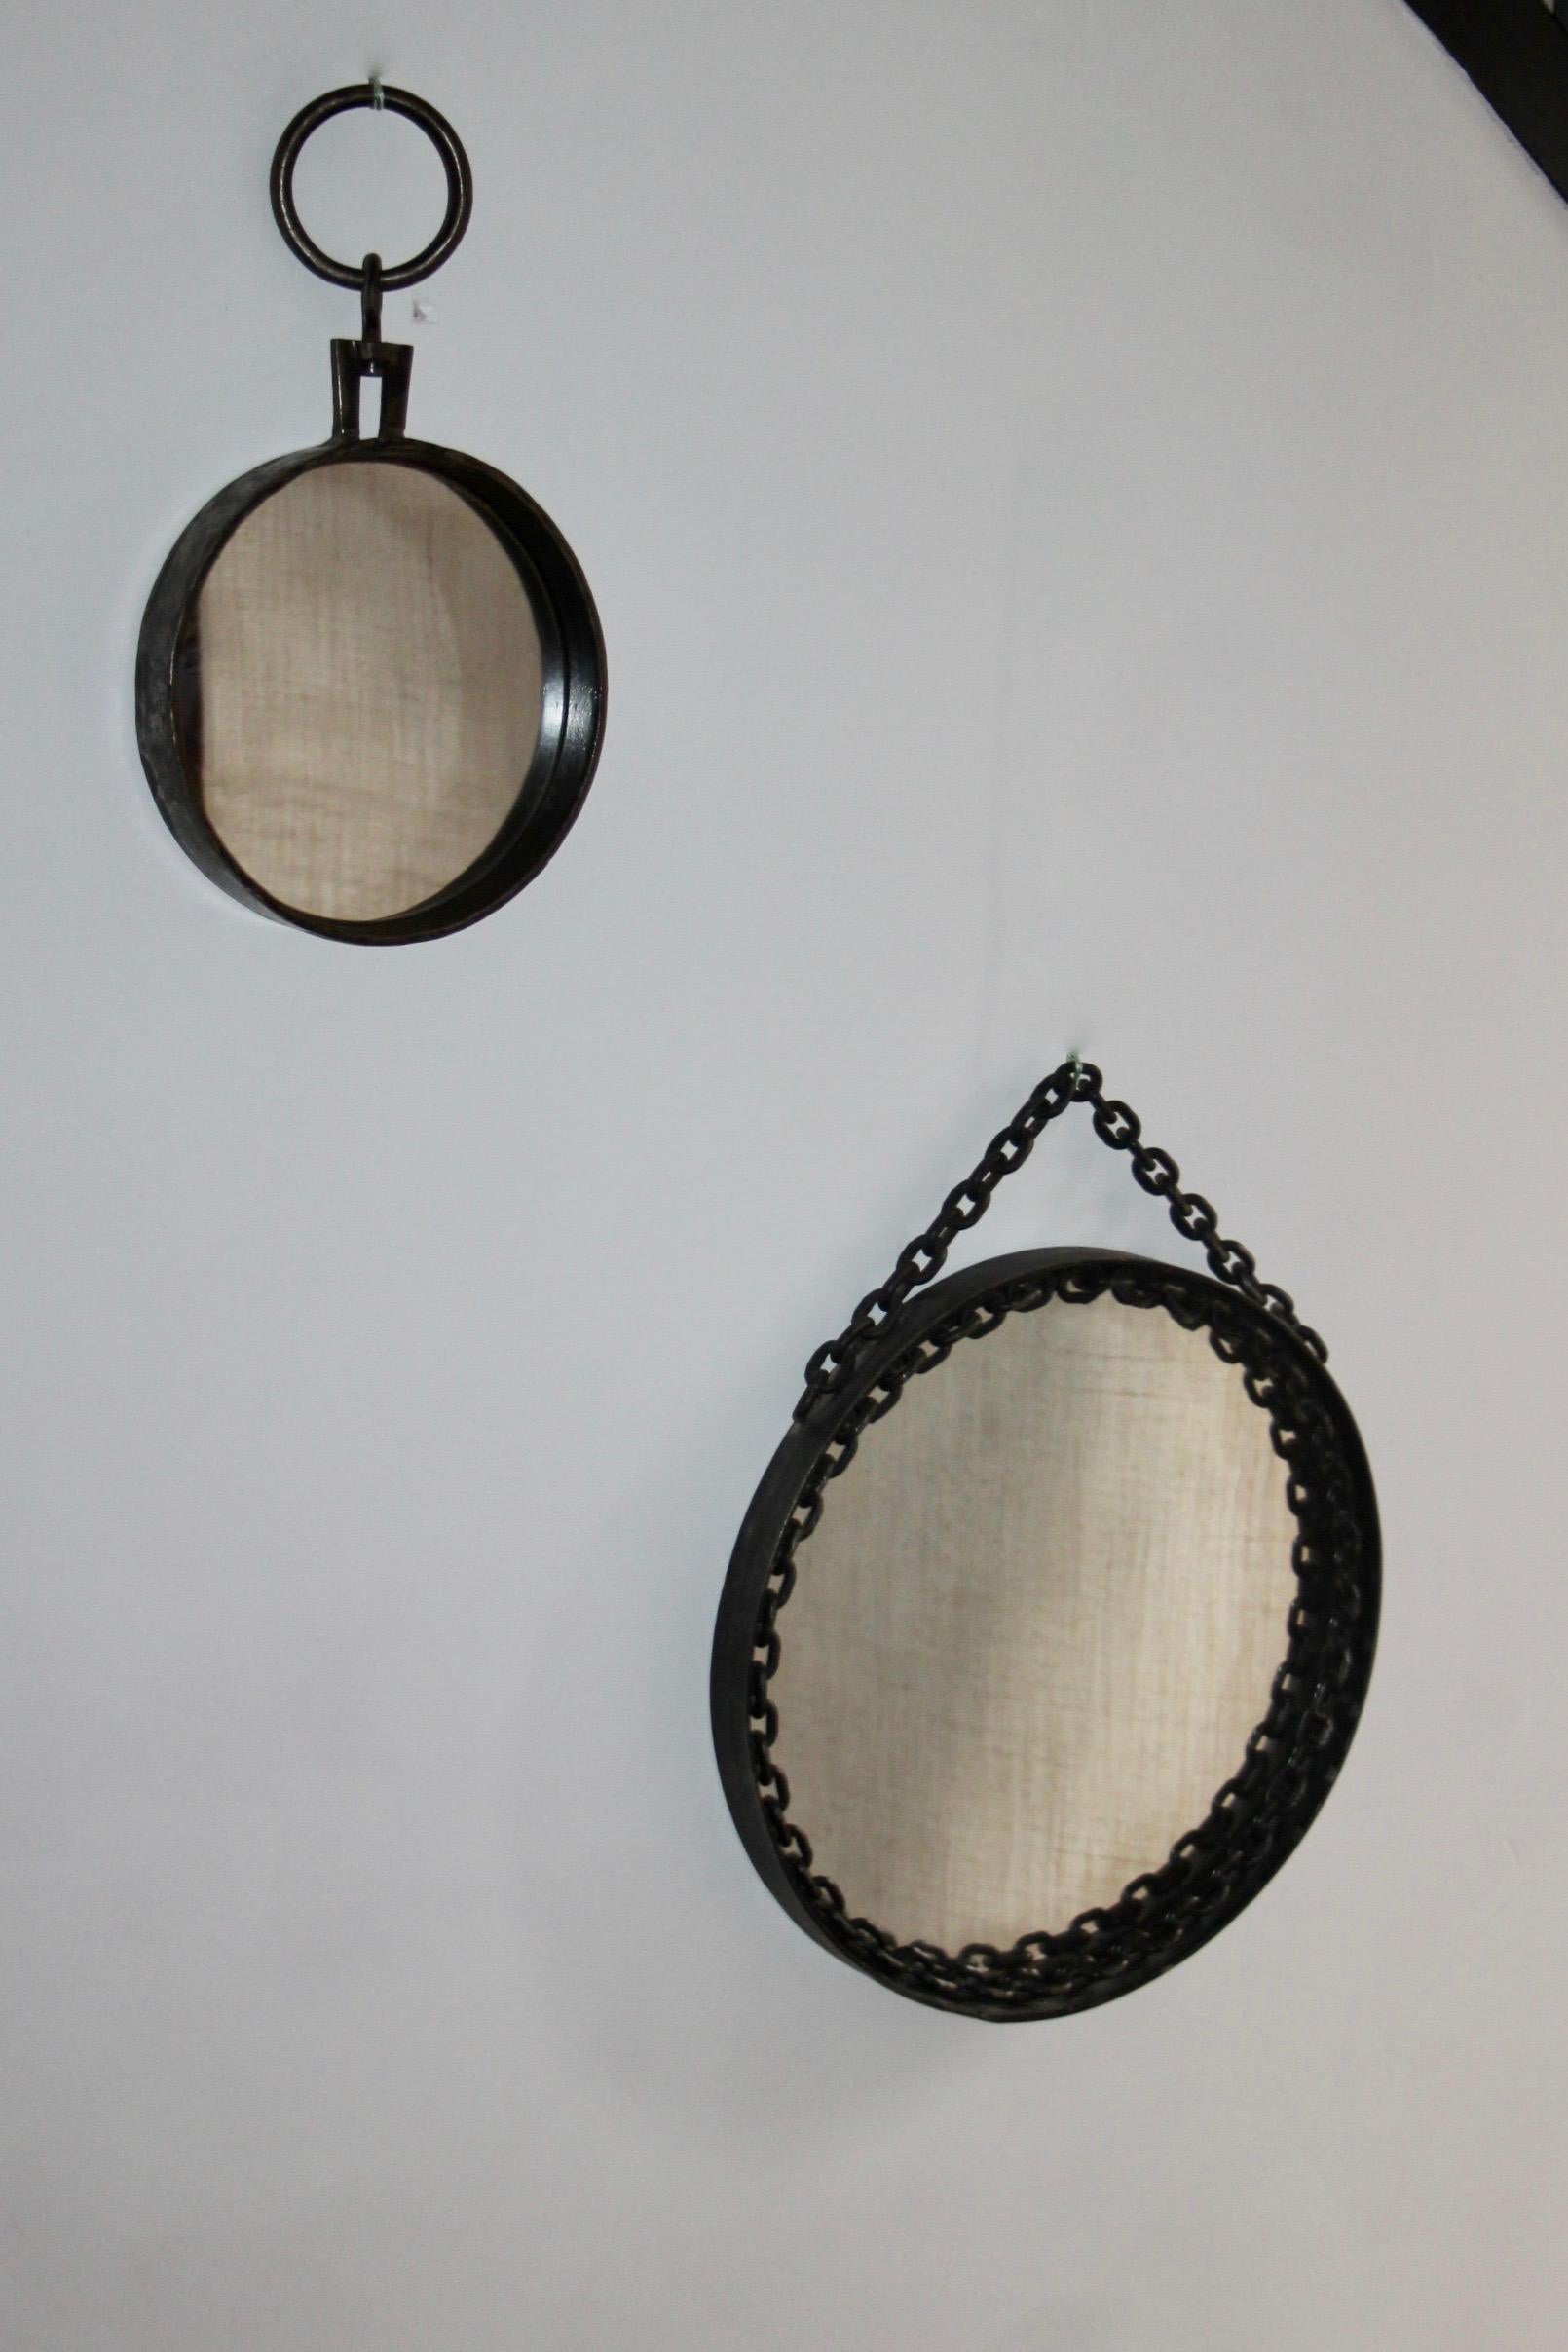 Runder Wandspiegel im Stil von Franz West aus Schmiedeeisen.
Schwarz und einige silberne Farbe erscheinen, um eine leicht abgenutzt Schaffung einer Patina-Effekt auf dem Metall zu geben. 
Der Kettenteil wird um den Spiegel herum befestigt, mit